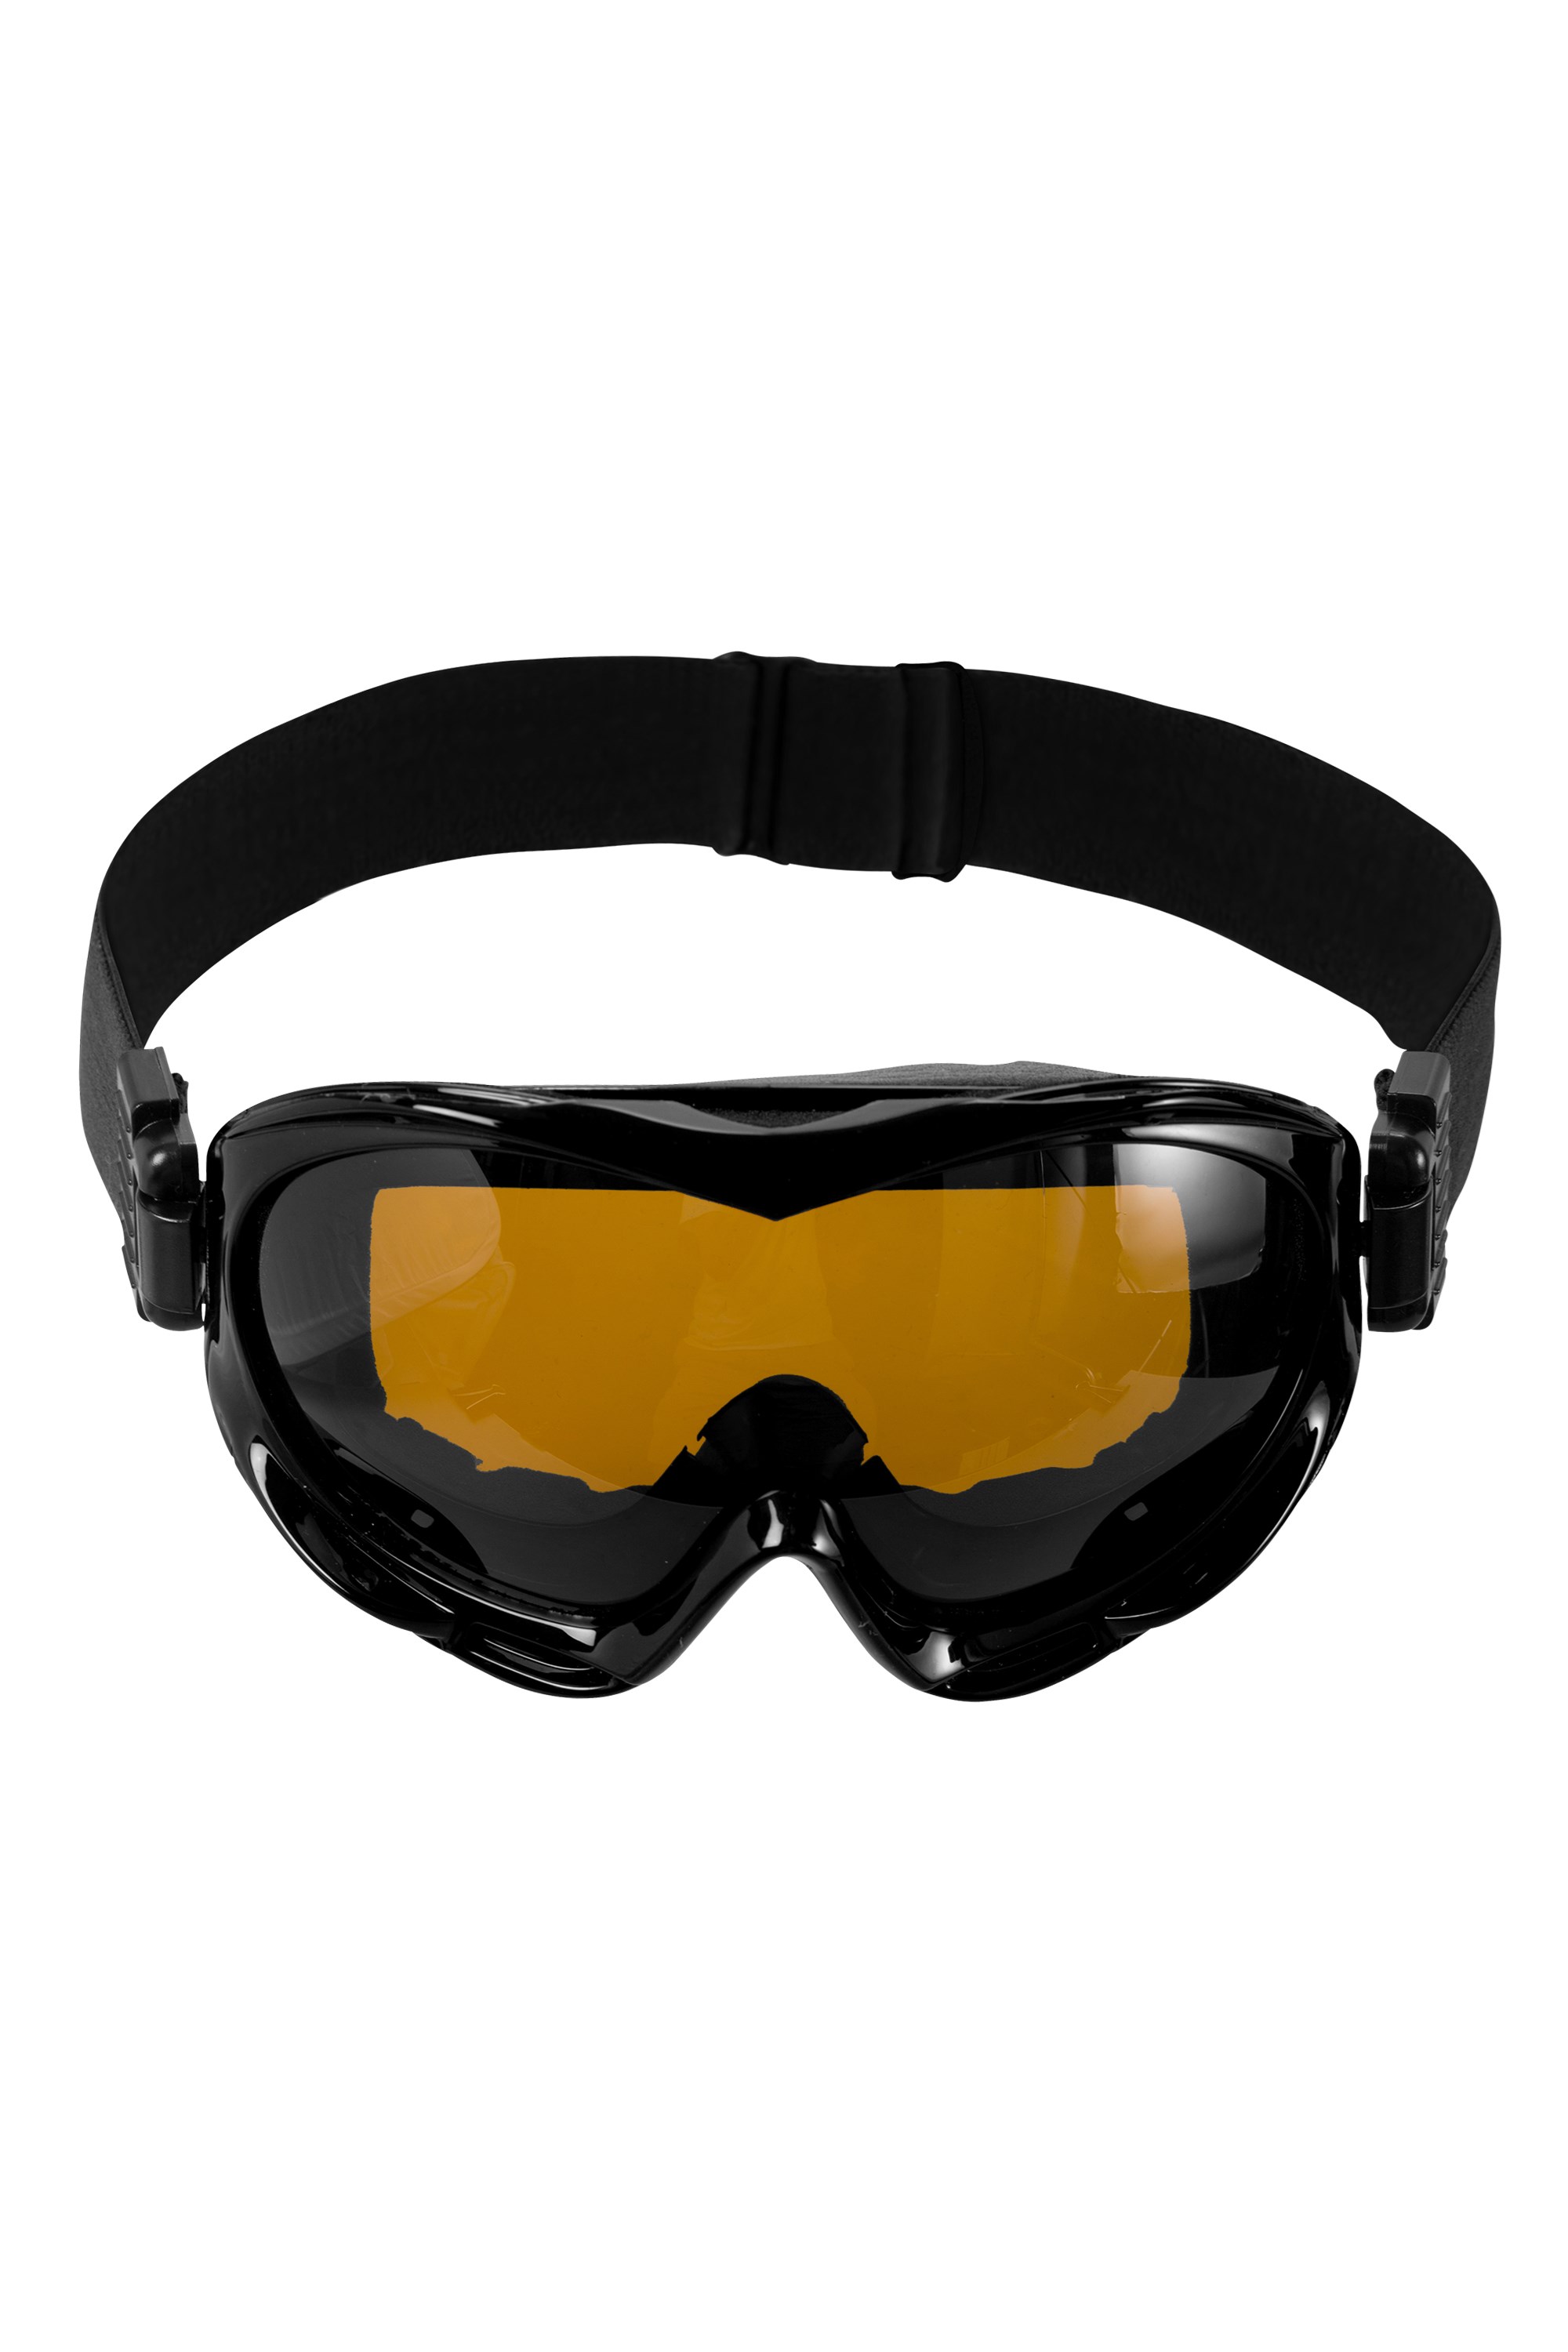 Womens Ski Goggles - Black